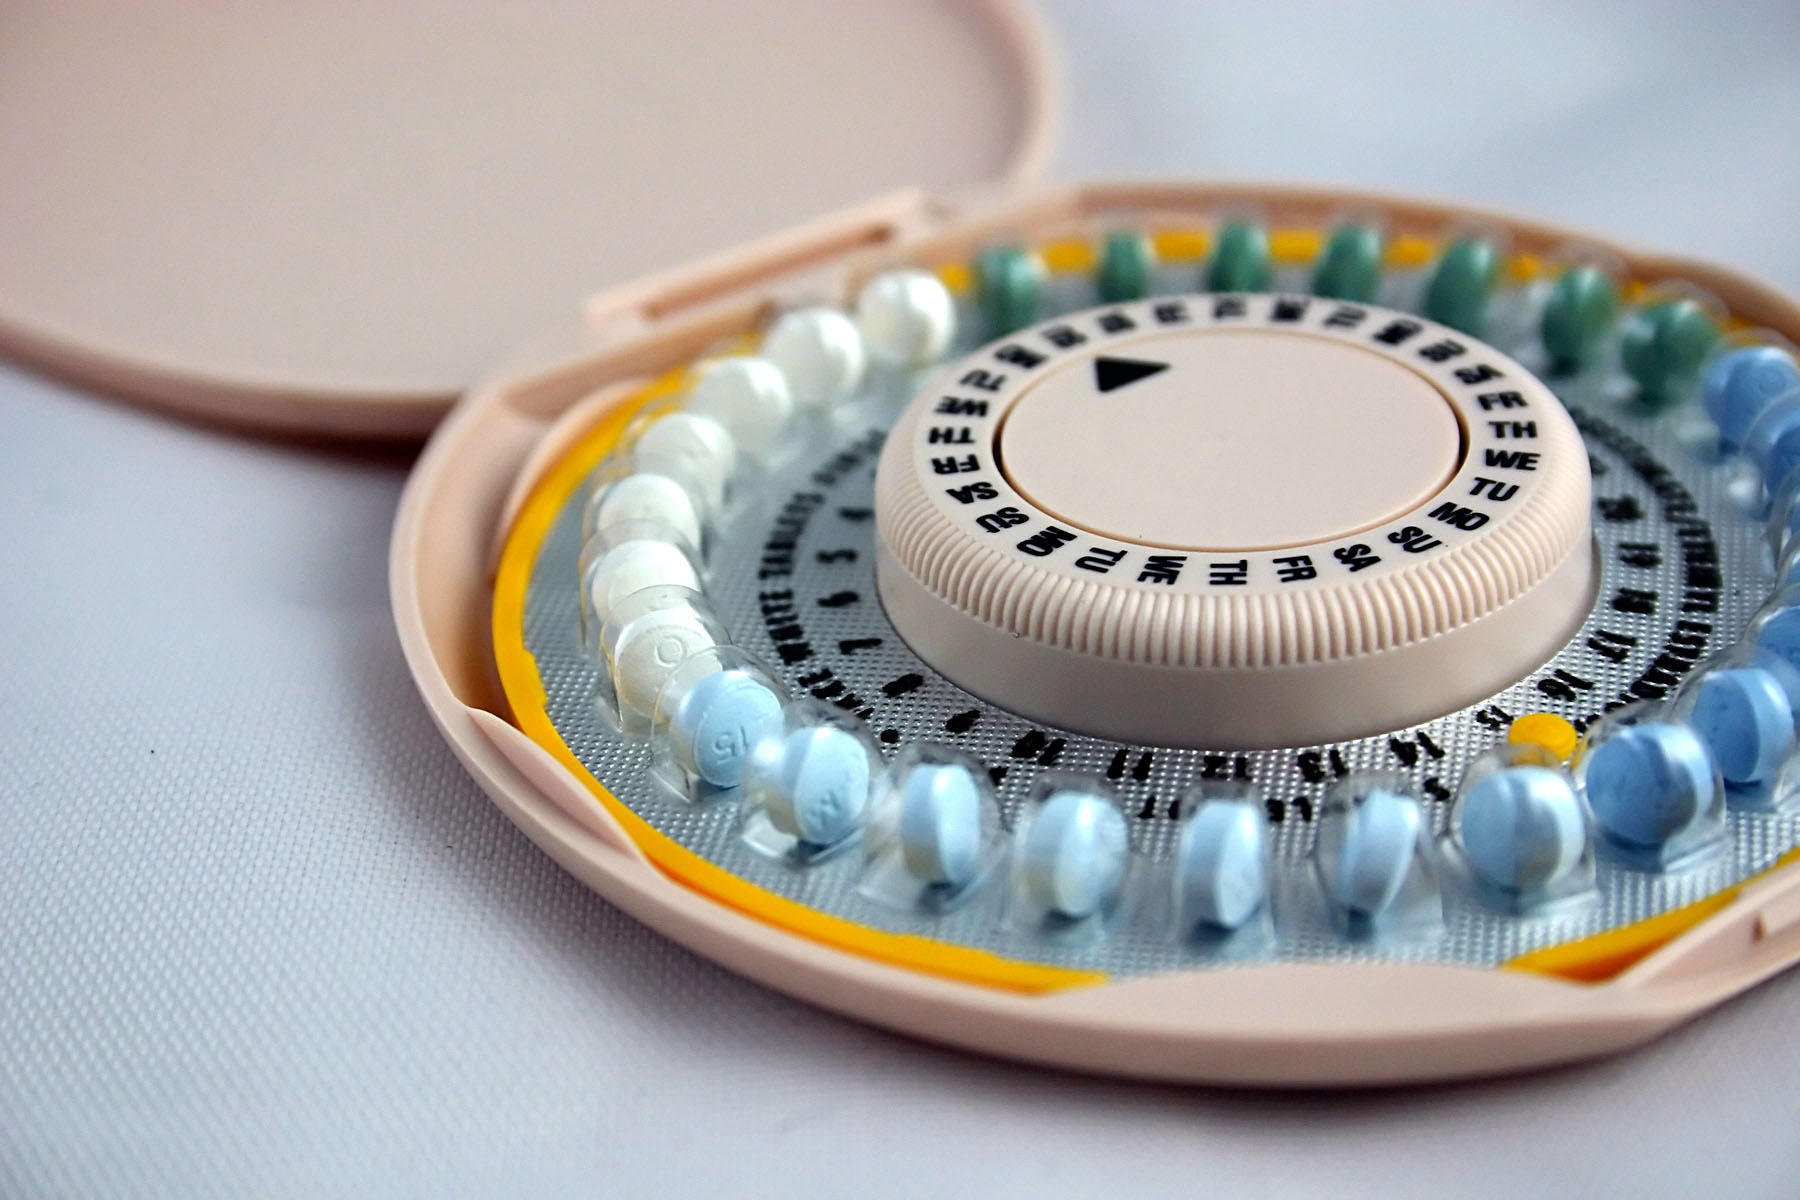 Oubli de pilule : quel est le risque de grossesse ?